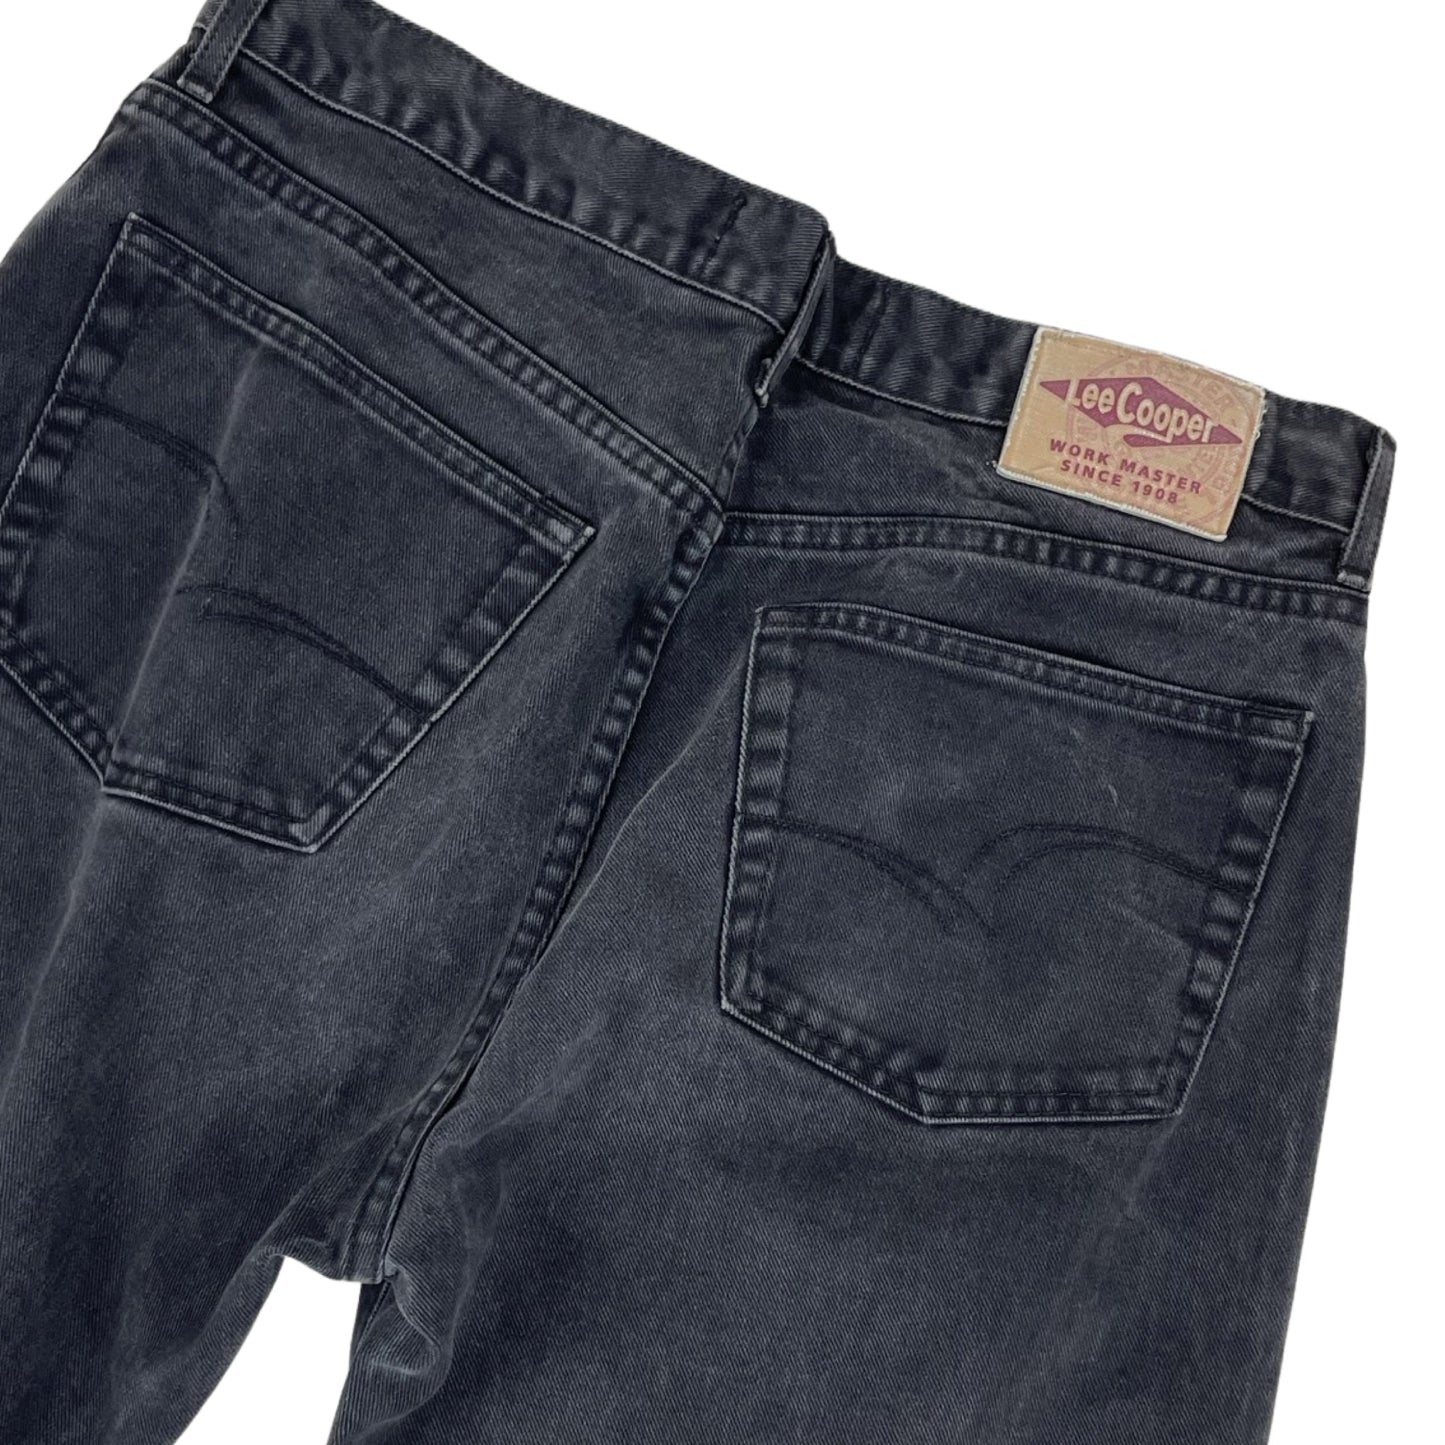 Vintage Lee Cooper Denim Jeans Black W36L30